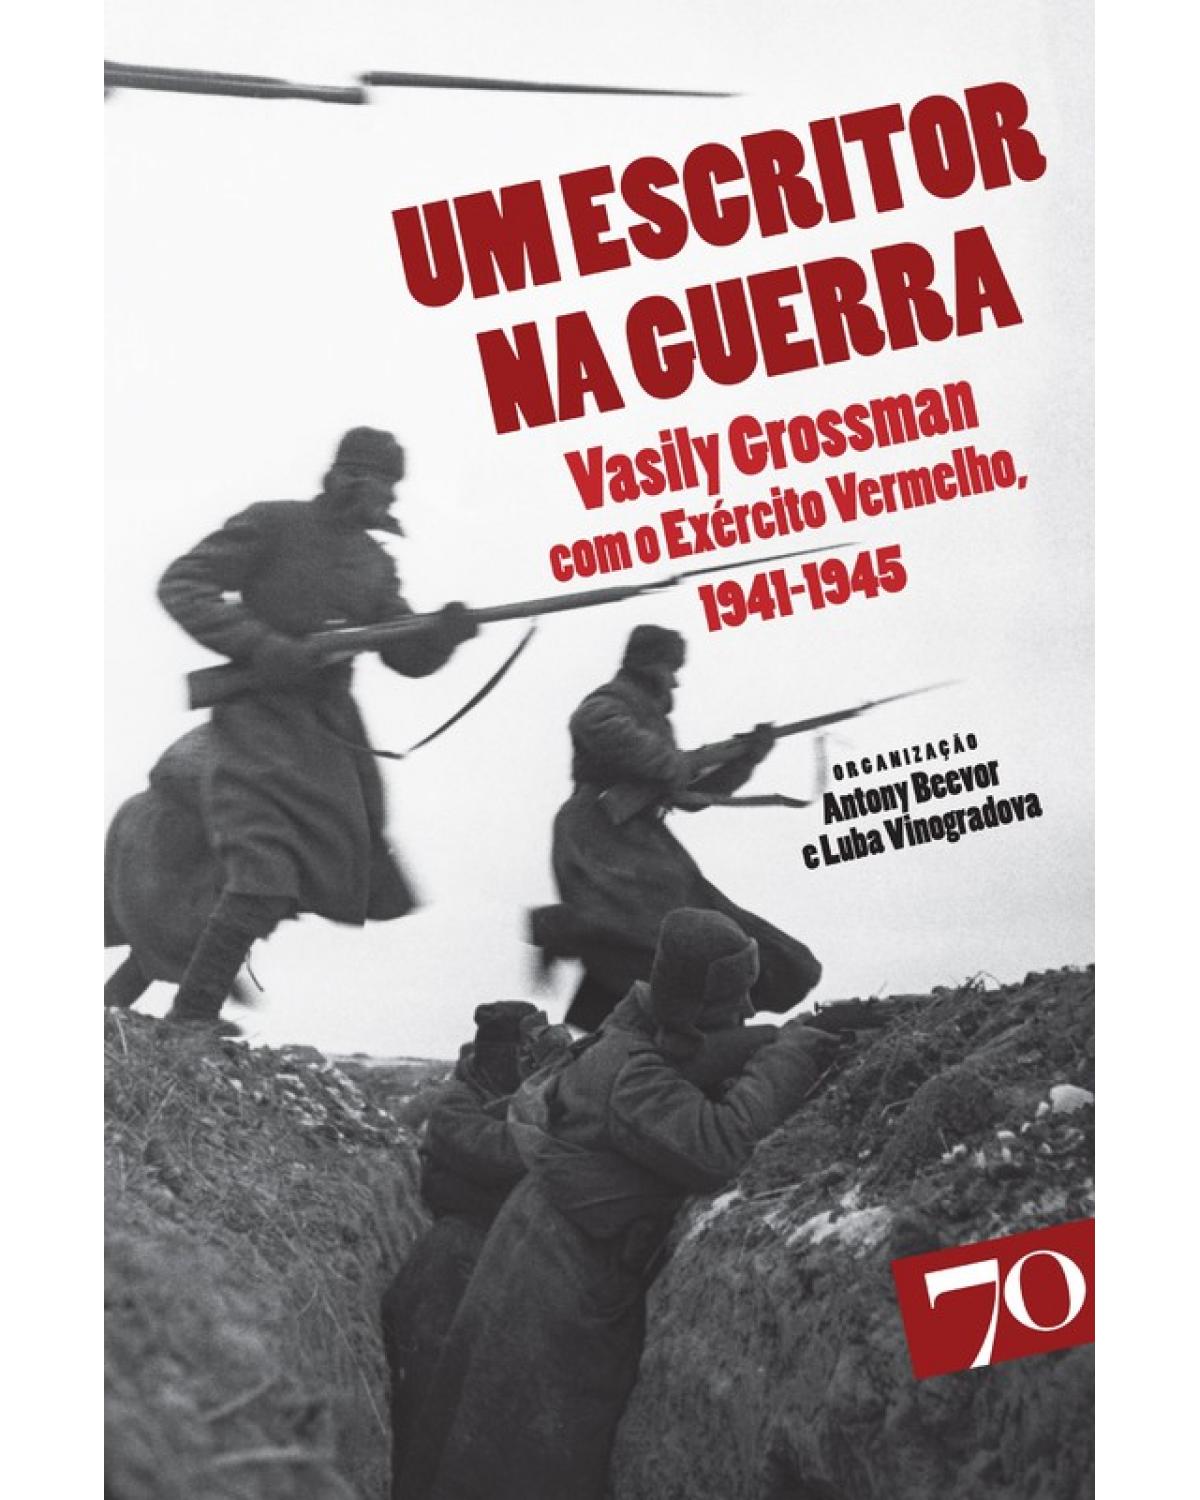 Um escritor na guerra - Vasily Grossman com o Exército Vermelho, 1941-1945 - 1ª Edição | 2007